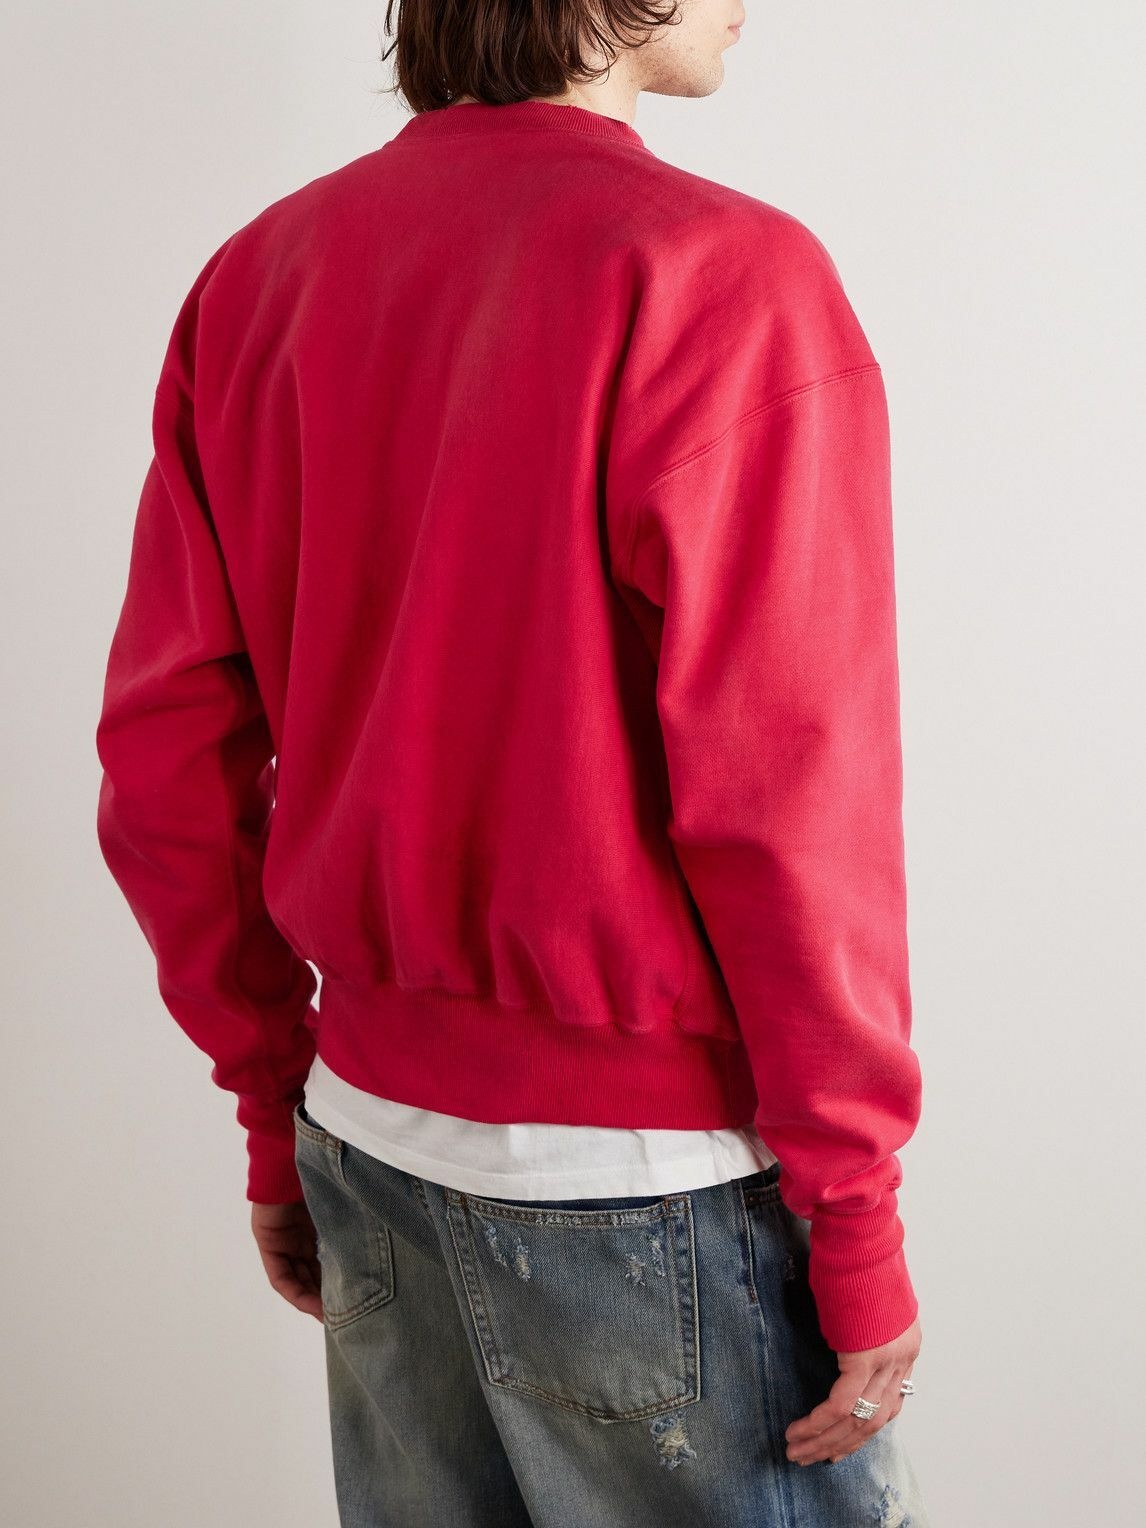 SAINT Mxxxxxx - Logo-Print Cotton-Blend Jersey Sweatshirt - Red